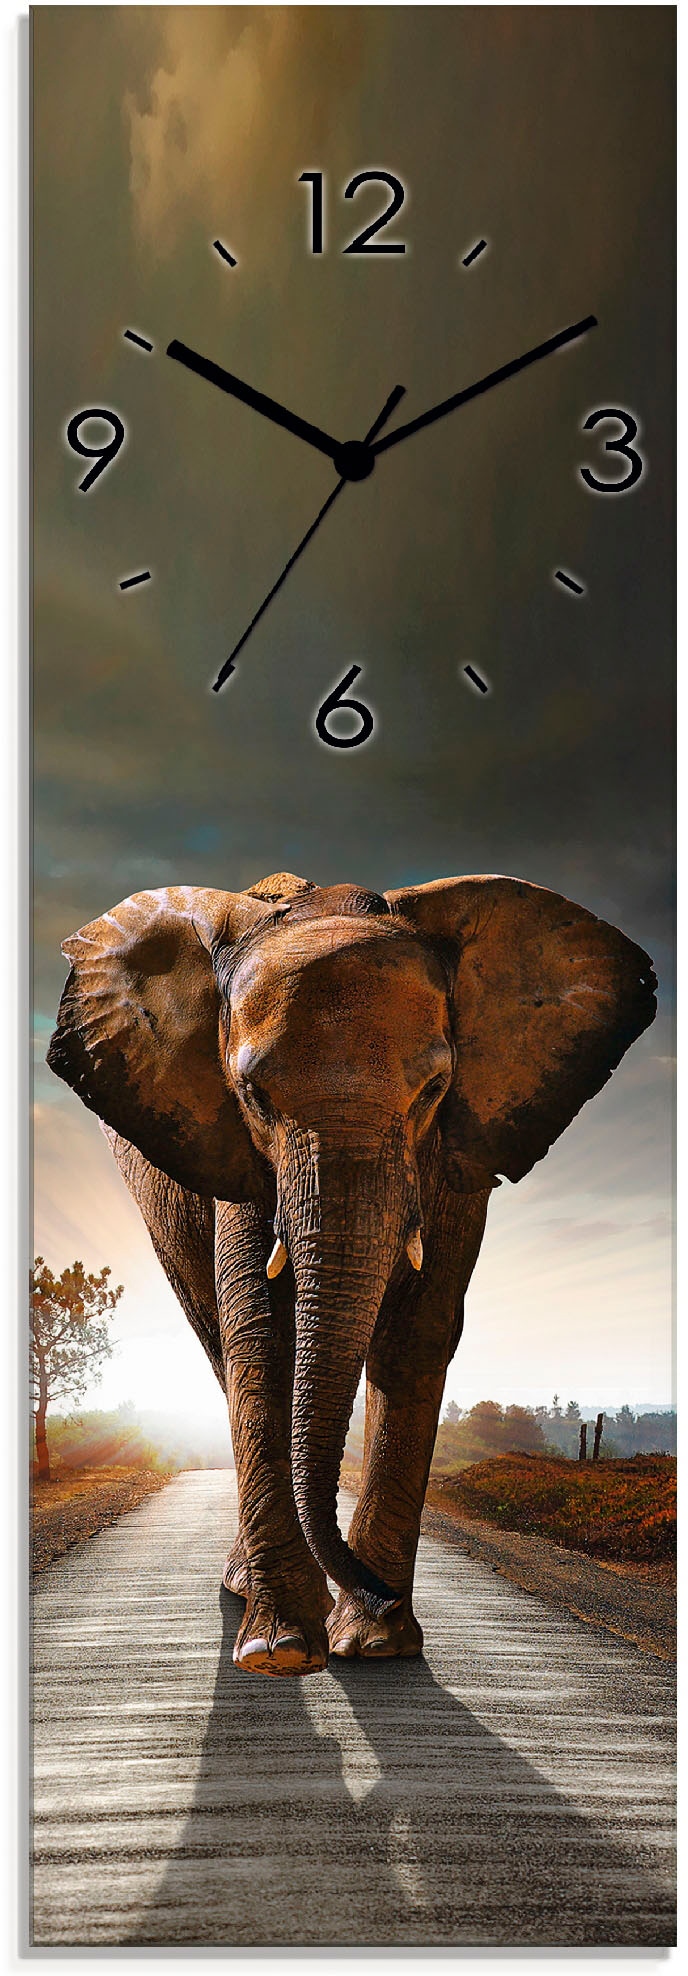 Artland Wanduhr »Ein Elefant läuft auf der Strasse«, wahlweise mit Quarz- oder Funkuhrwerk, lautlos ohne Tickgeräusche